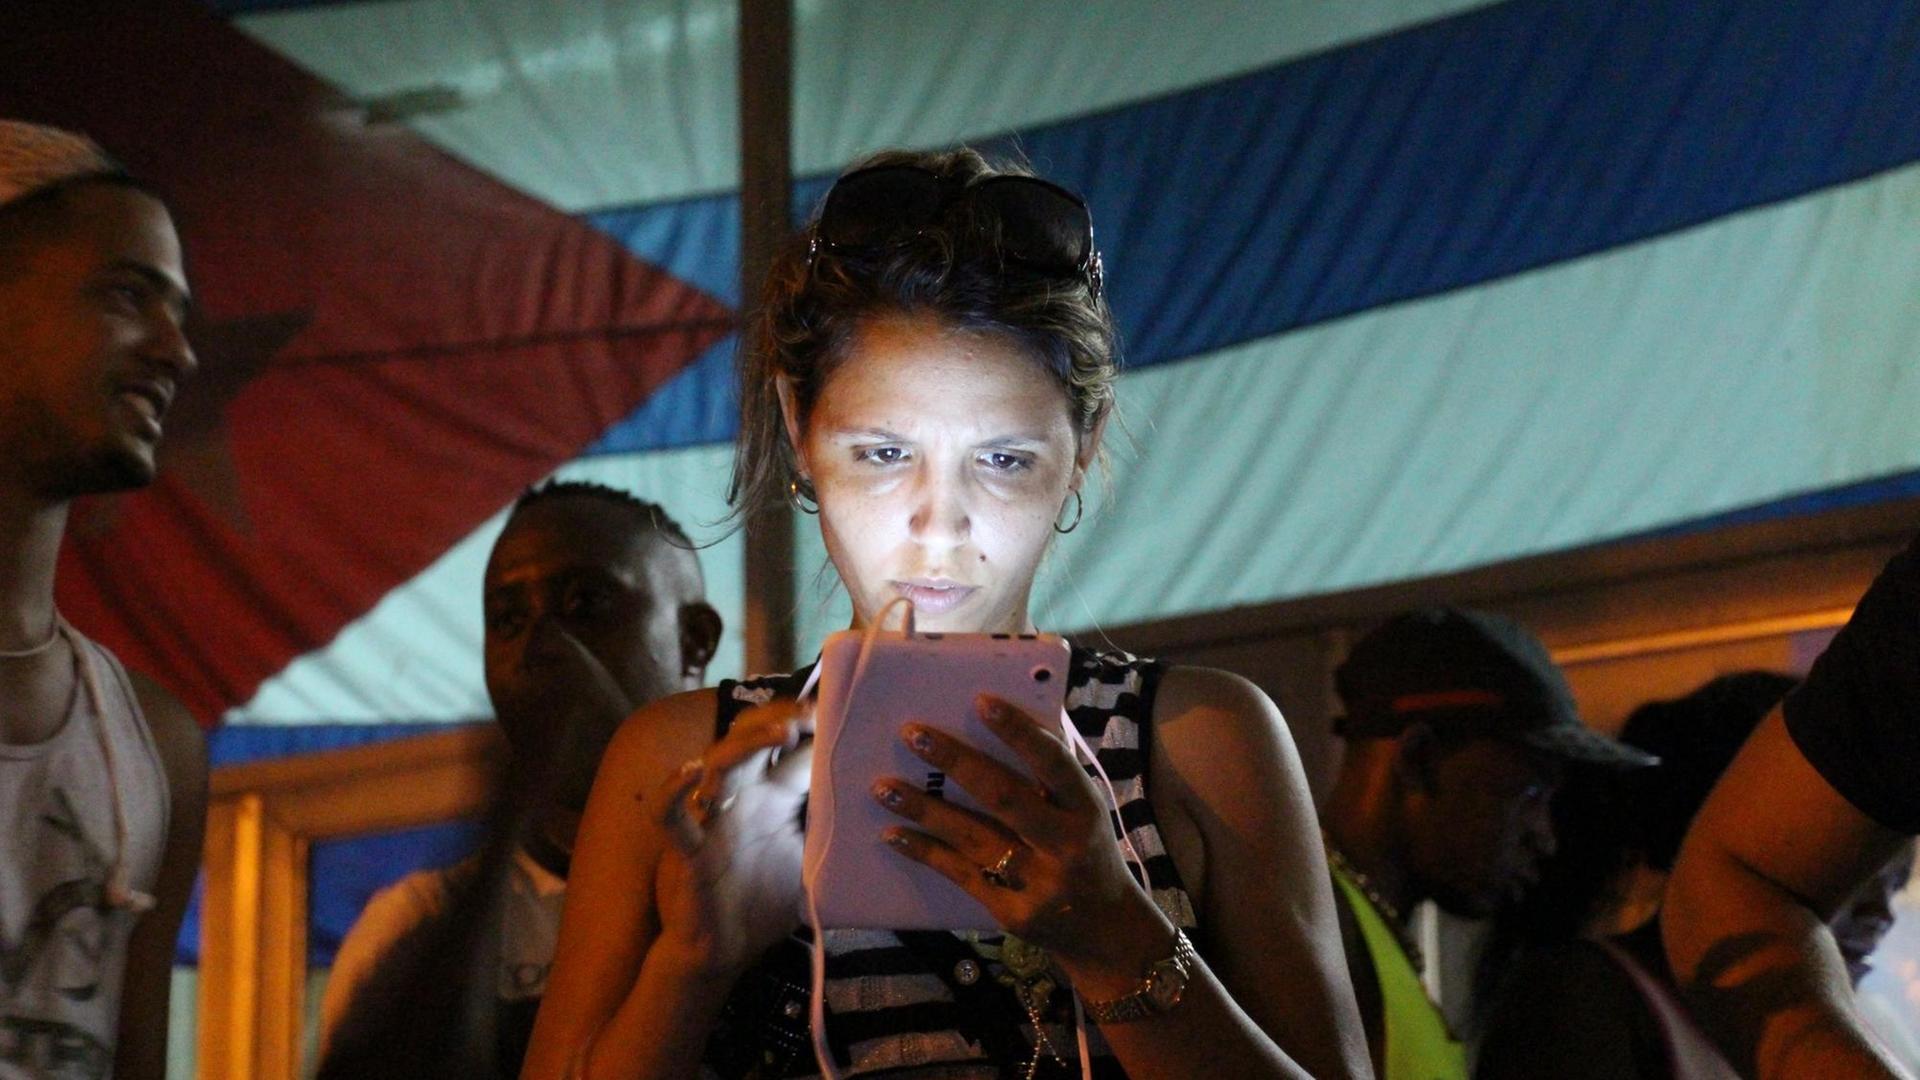 Eine junge Frau surft am 16.10.2015 an einem öffentlichen WLAN-Spot im Stadtbezirk Marianao, Havanna, Kuba, im Internet. Öffentliche WLAN-Spots sorgen für Begeisterung bei jungen Menschen in Havanna. Mit einem begrenzten Angebot wollen die Castros die vormals isolierte Insel behutsam in die Online-Welt führen. Foto: Isaac Risco/dpa (zu dpa «Das sozialistische Kuba öffnet das Internet für seine Bürger» vom 22.10.2015) | Verwendung weltweit